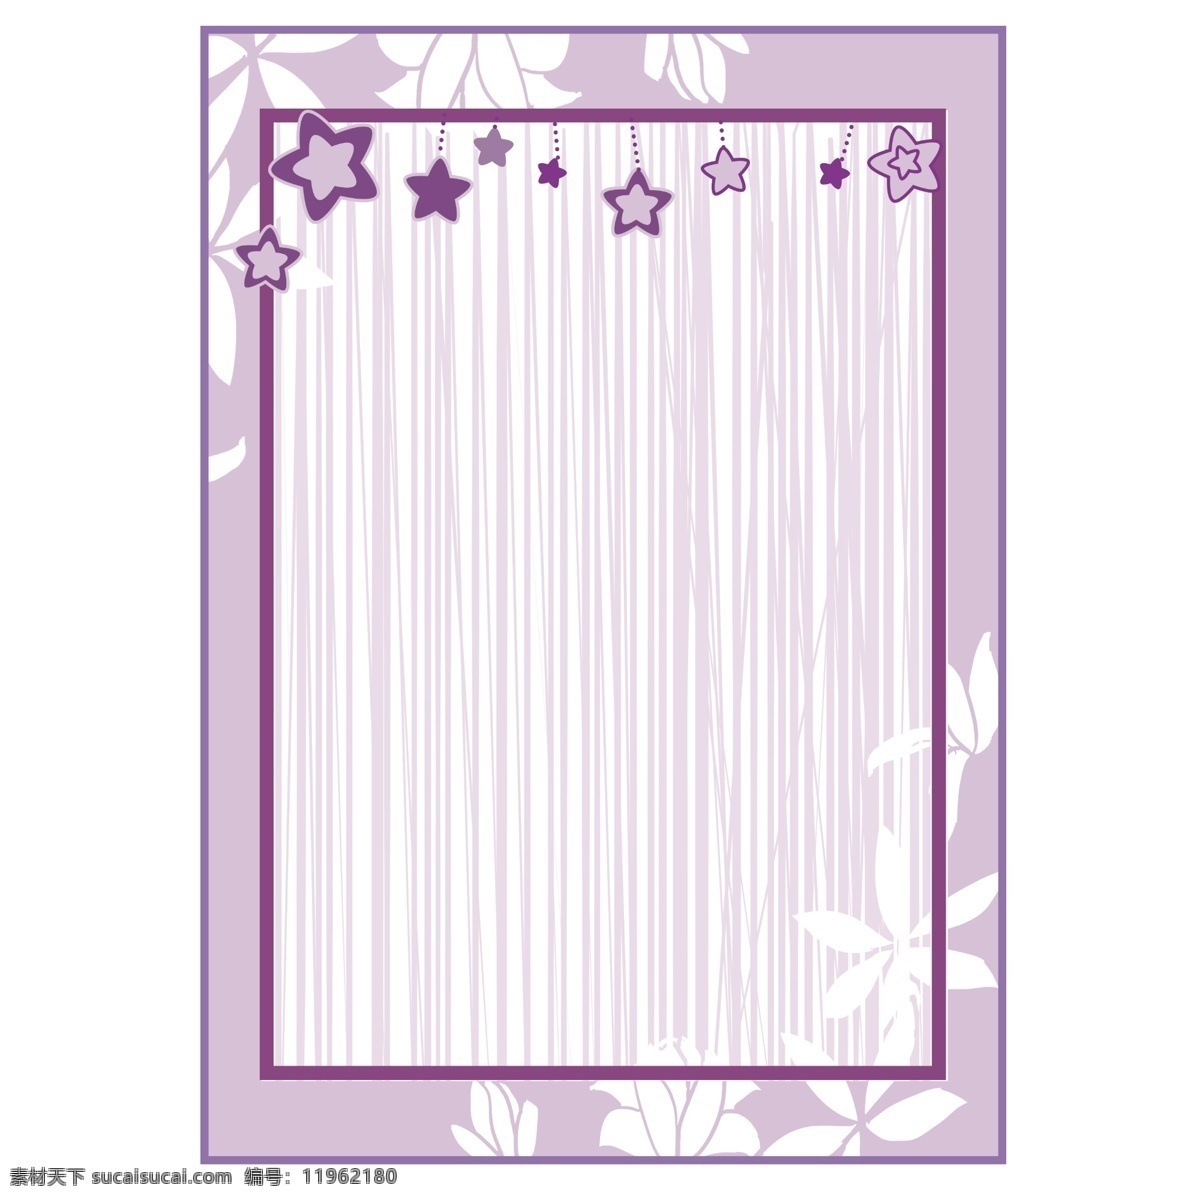 卡通 紫色 星星 边框 紫色边框 星星边框 完美的边框 相册边框 长方形边框 卡通边框 小宝边框 植物花